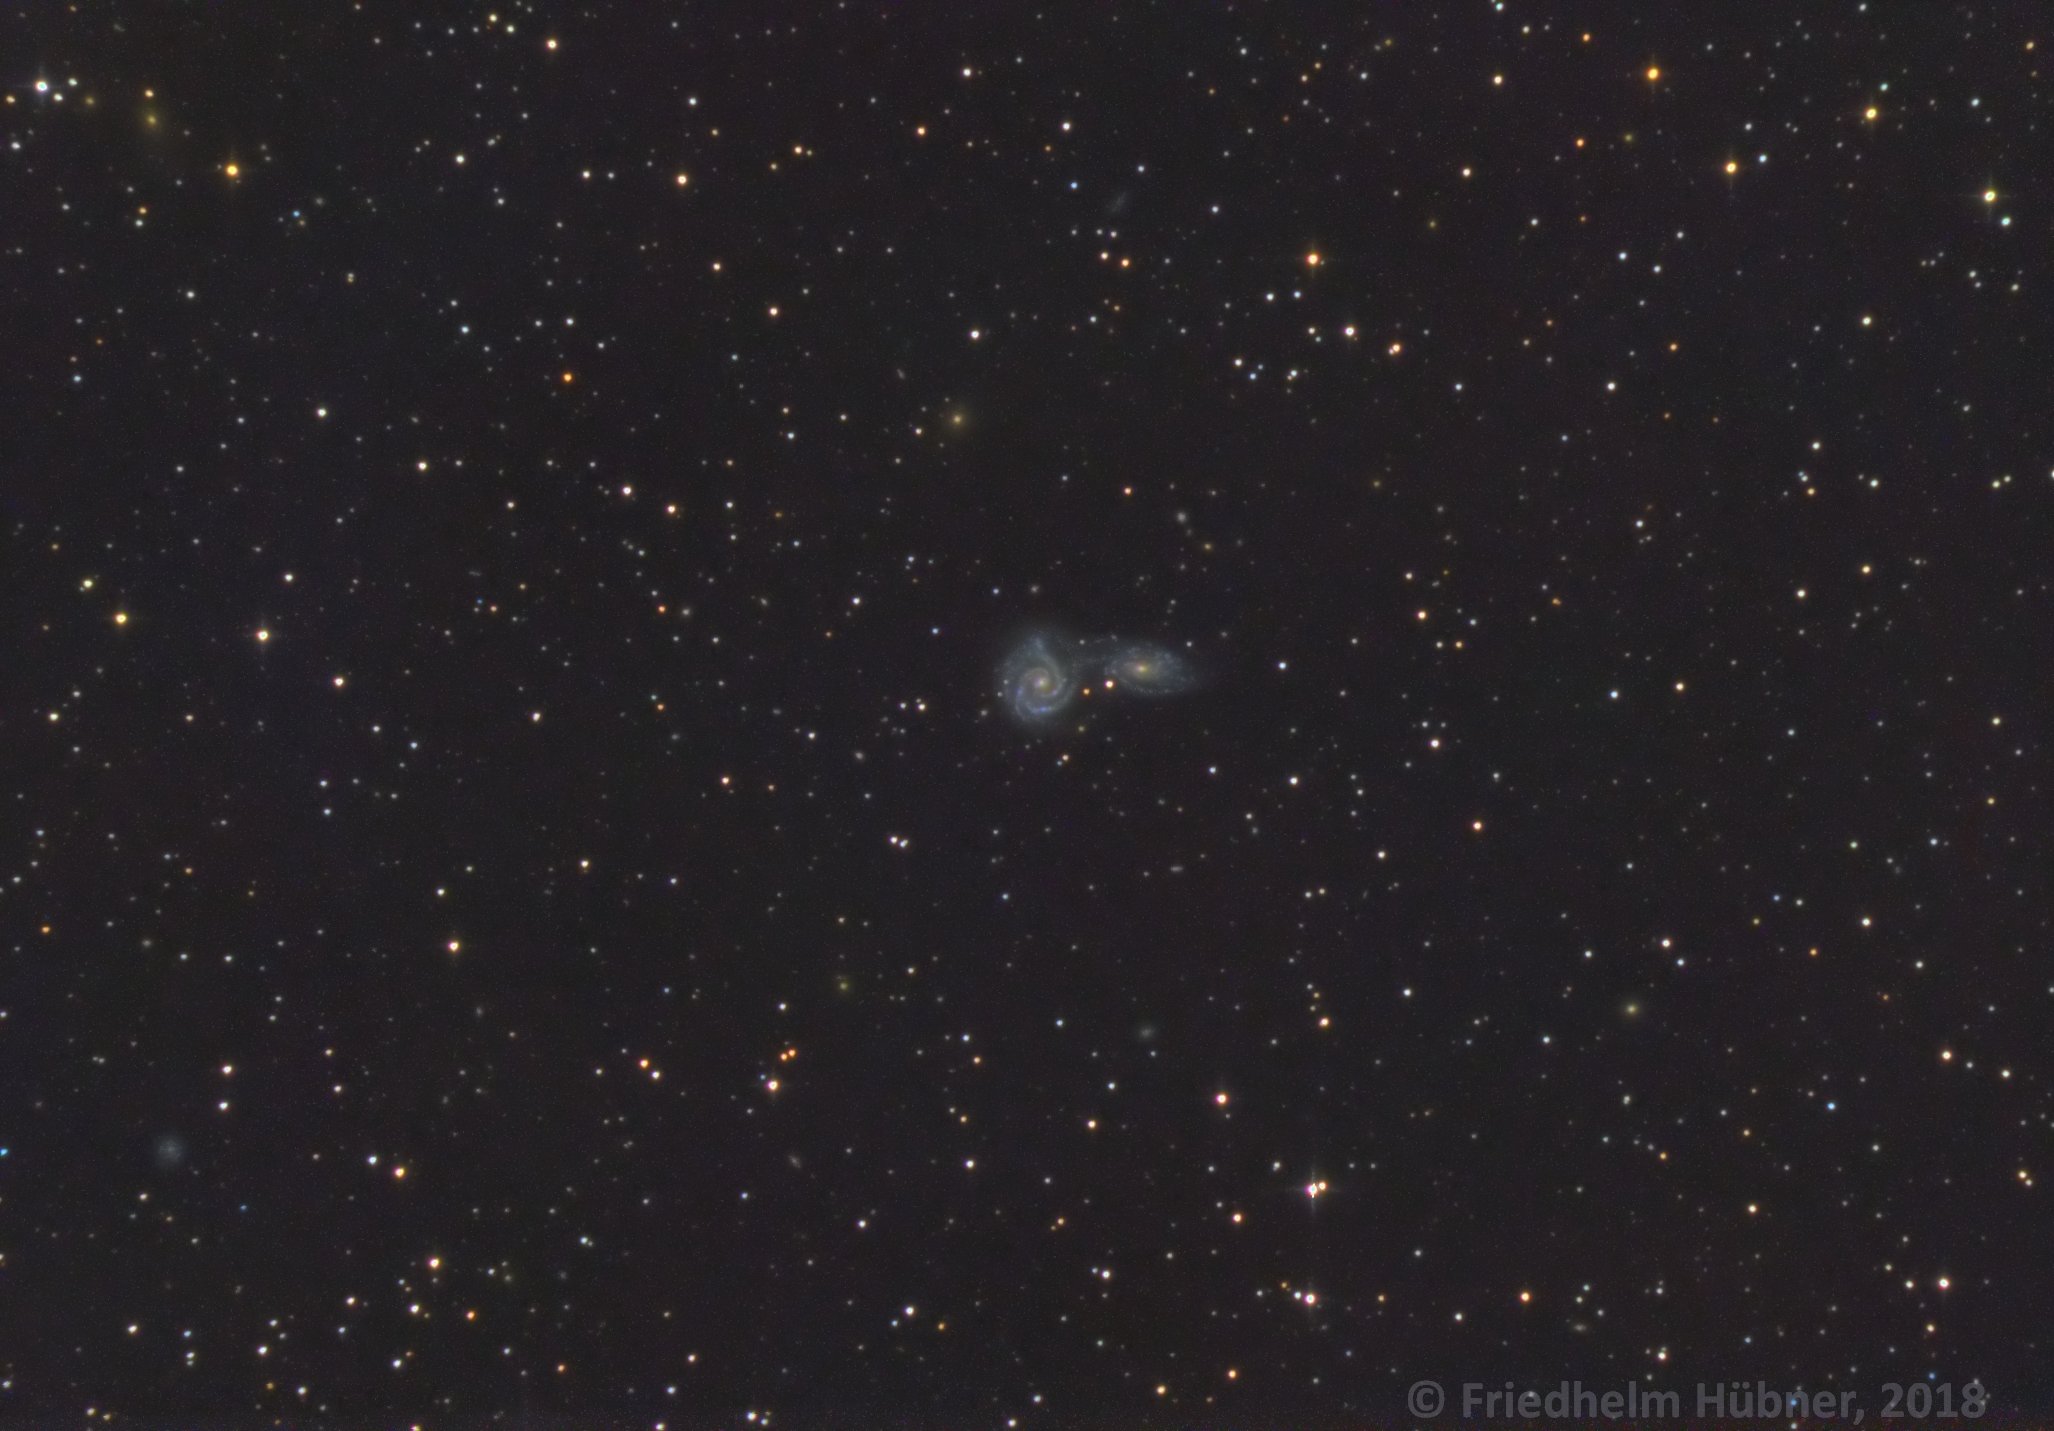 NGC 5427 and 5426 (Vir)